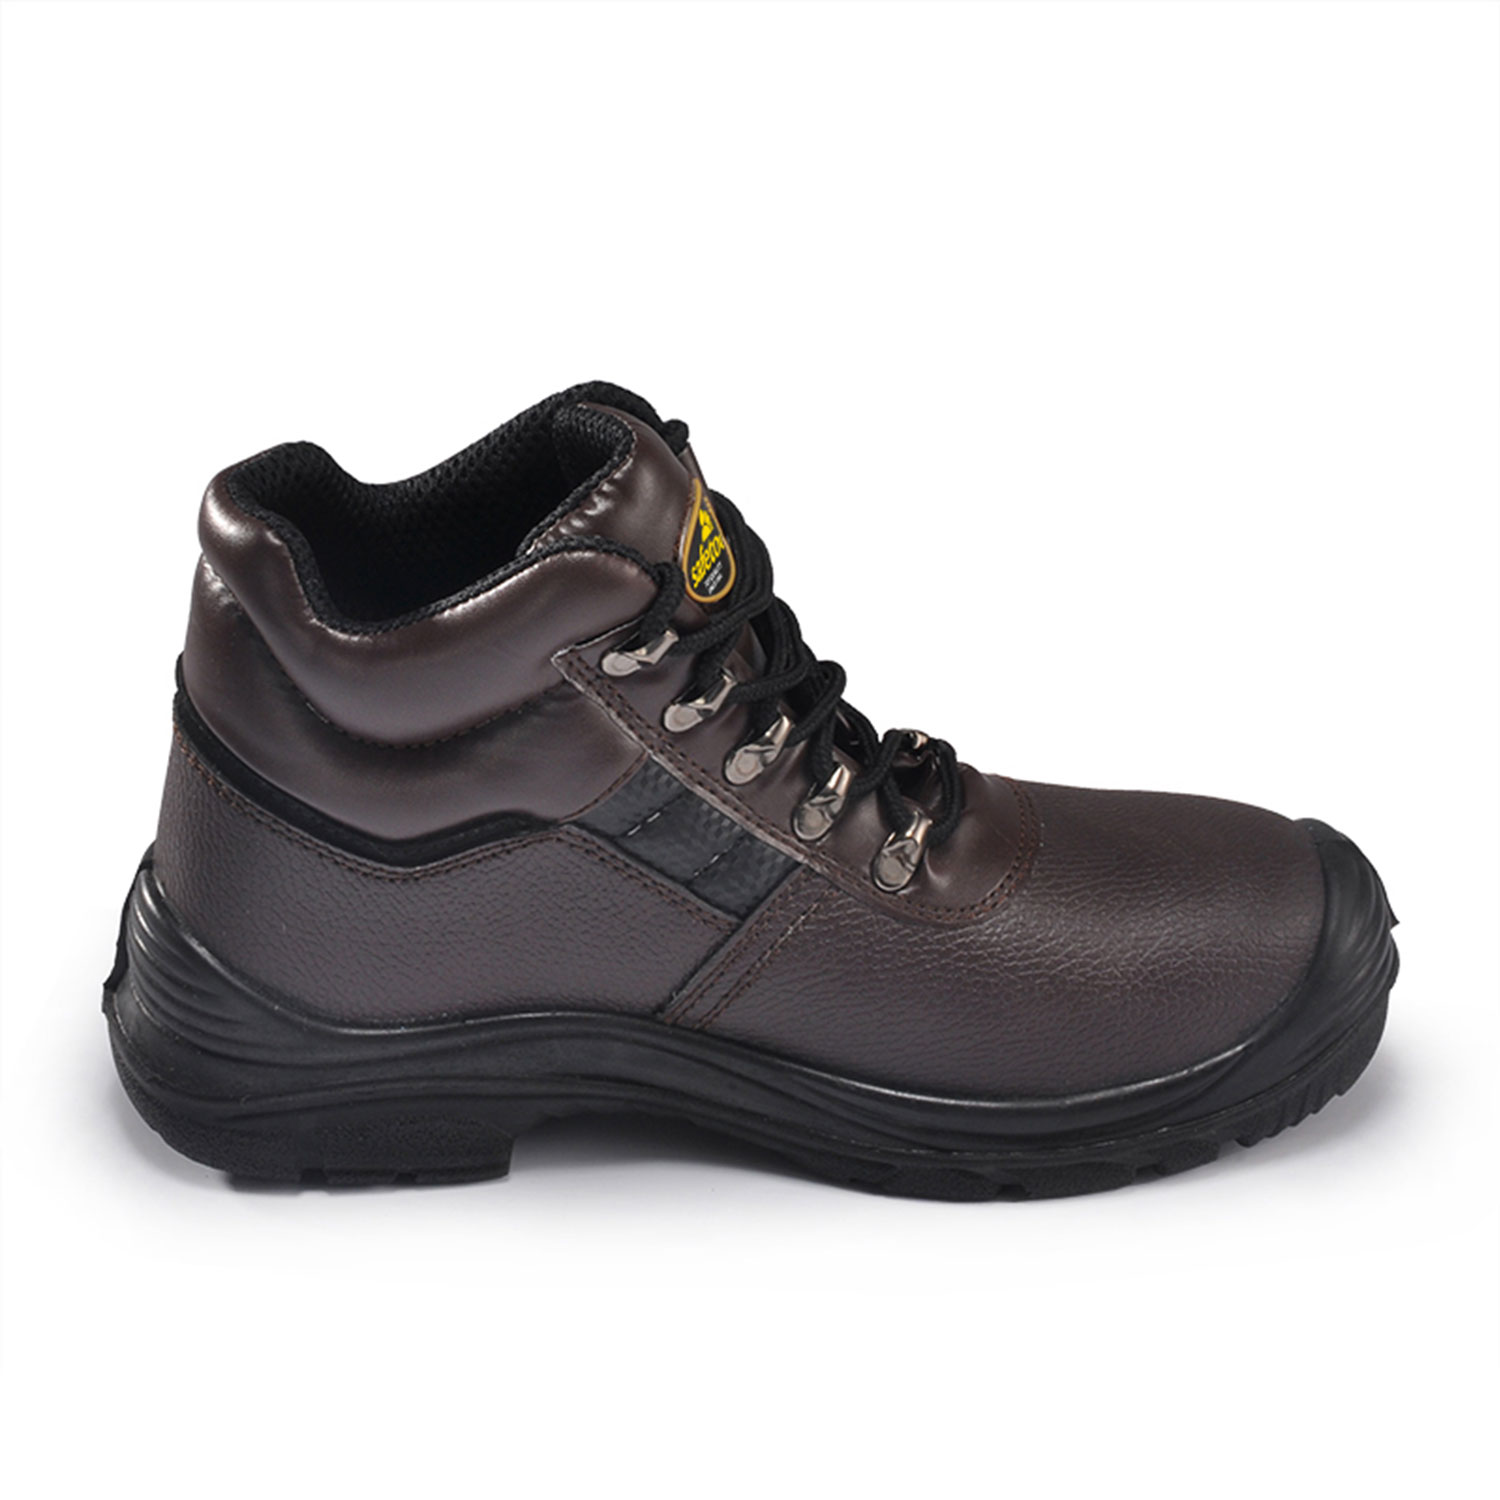 Chaussures de sécurité en cuir marron M-8027